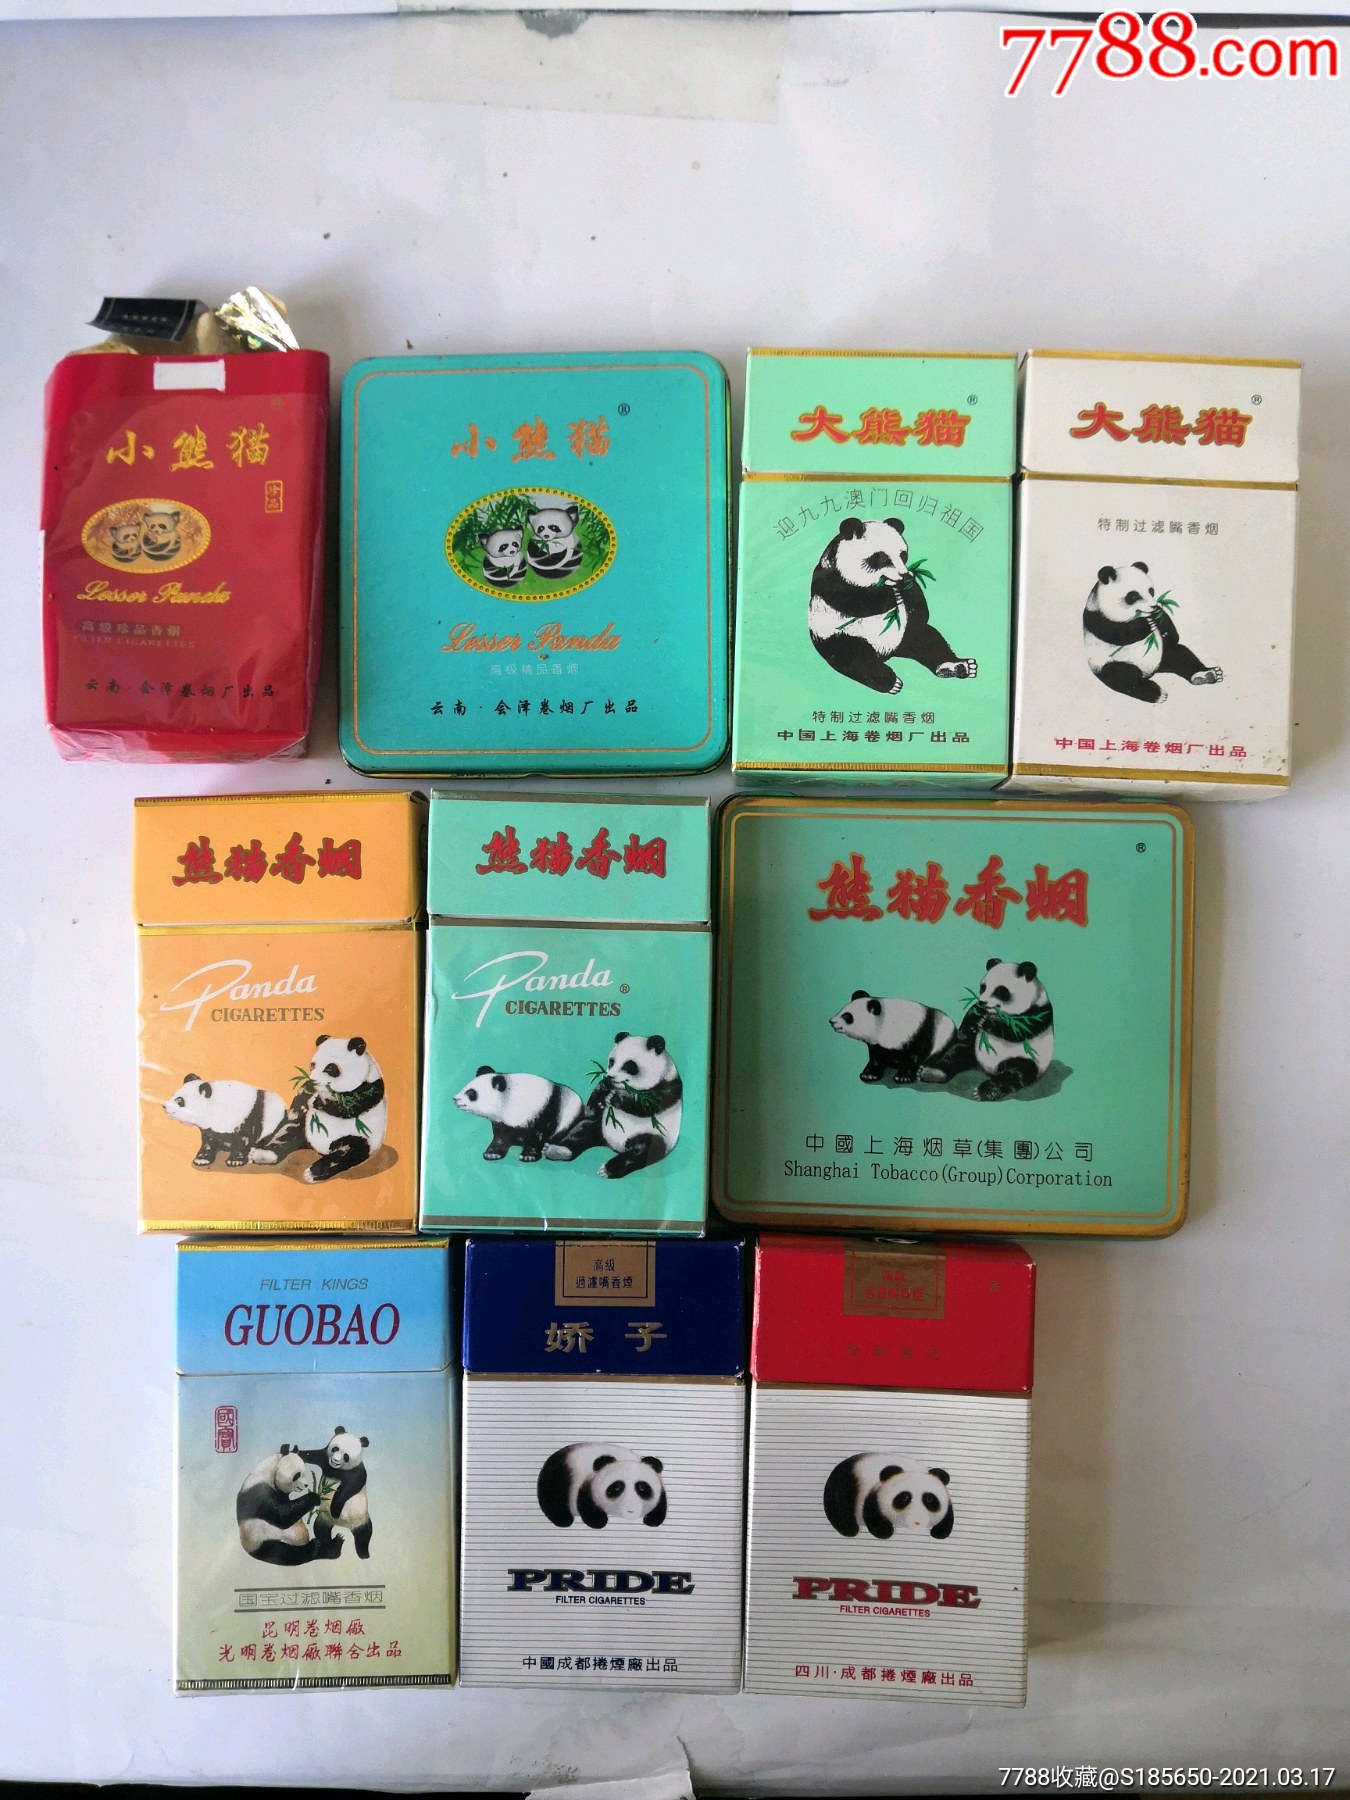 小熊猫香烟,大熊猫香烟,熊猫香烟,国宝香烟,娇子香烟